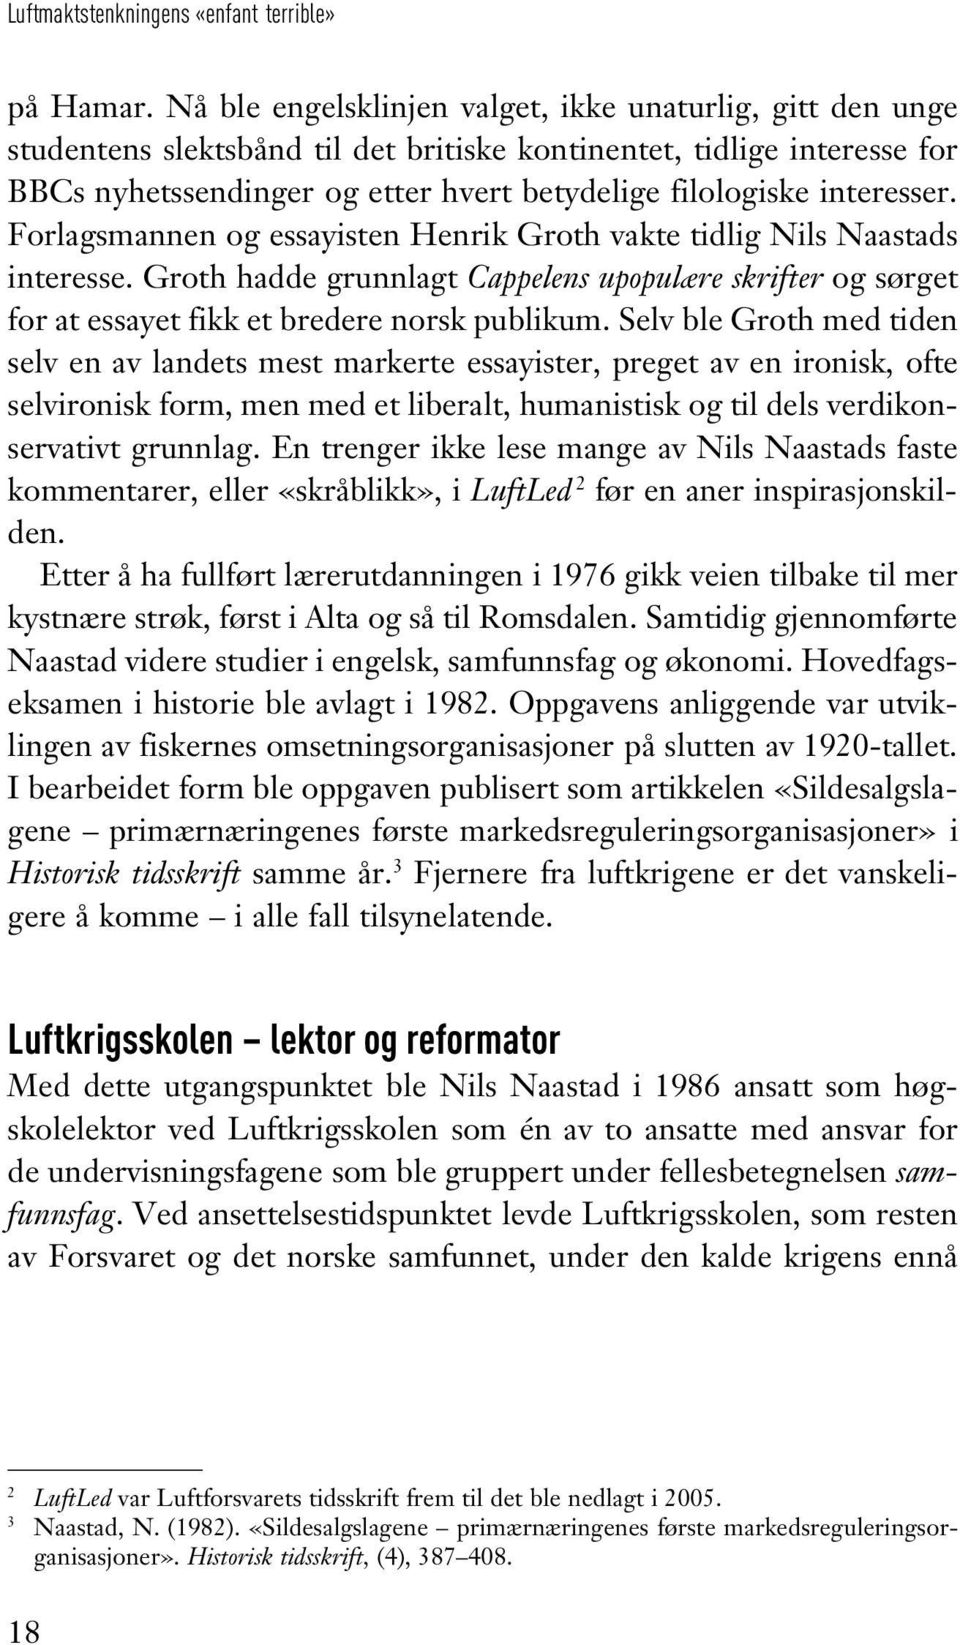 interesser. Forlagsmannen og essayisten Henrik Groth vakte tidlig Nils Naastads interesse. Groth hadde grunnlagt Cappelens upopulære skrifter og sørget for at essayet fikk et bredere norsk publikum.